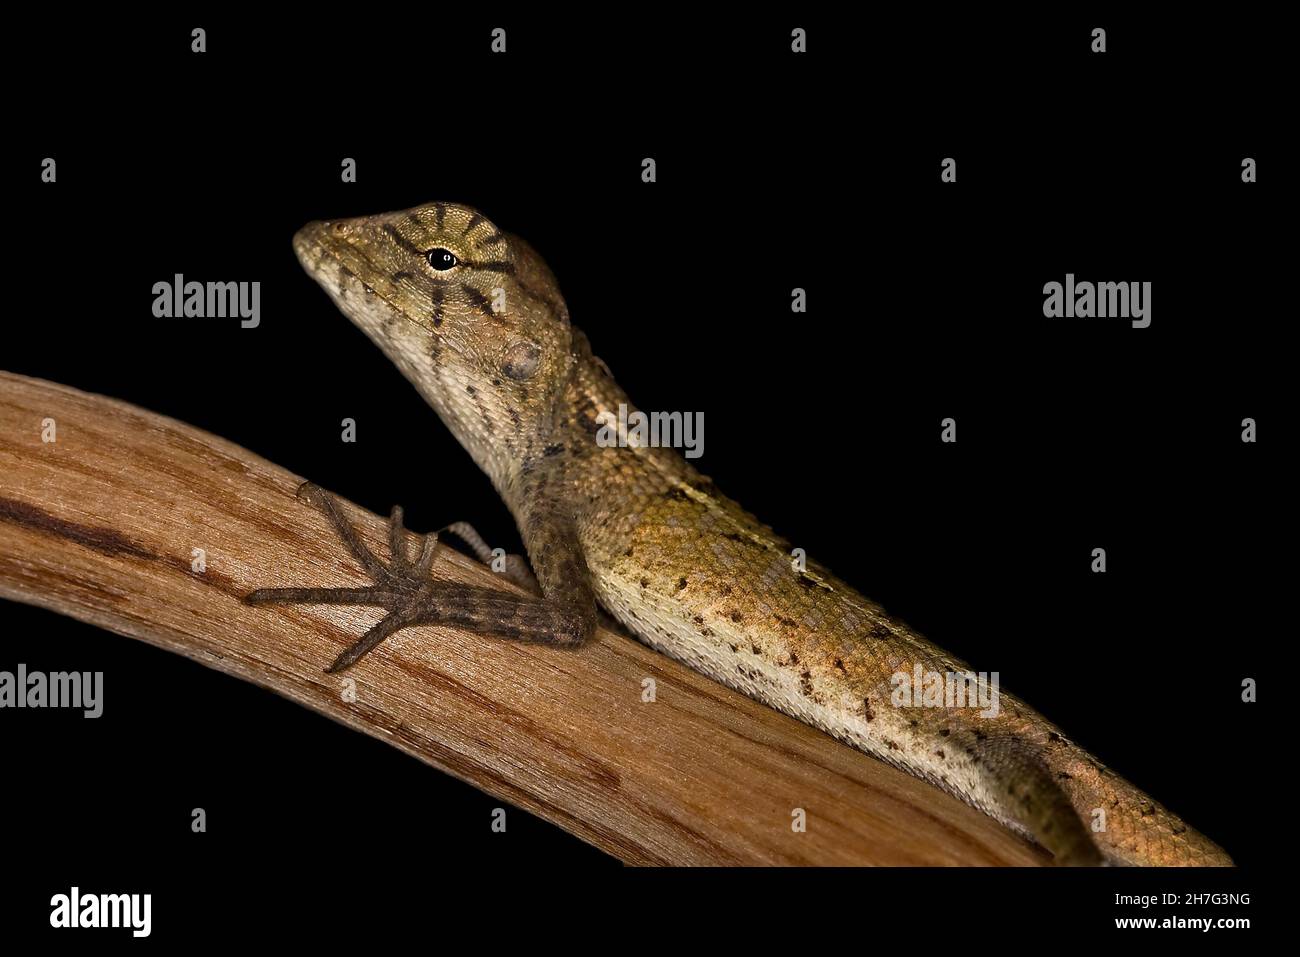 Lizard (Calotes versicolor) Thailand S. E. Asia Stock Photo